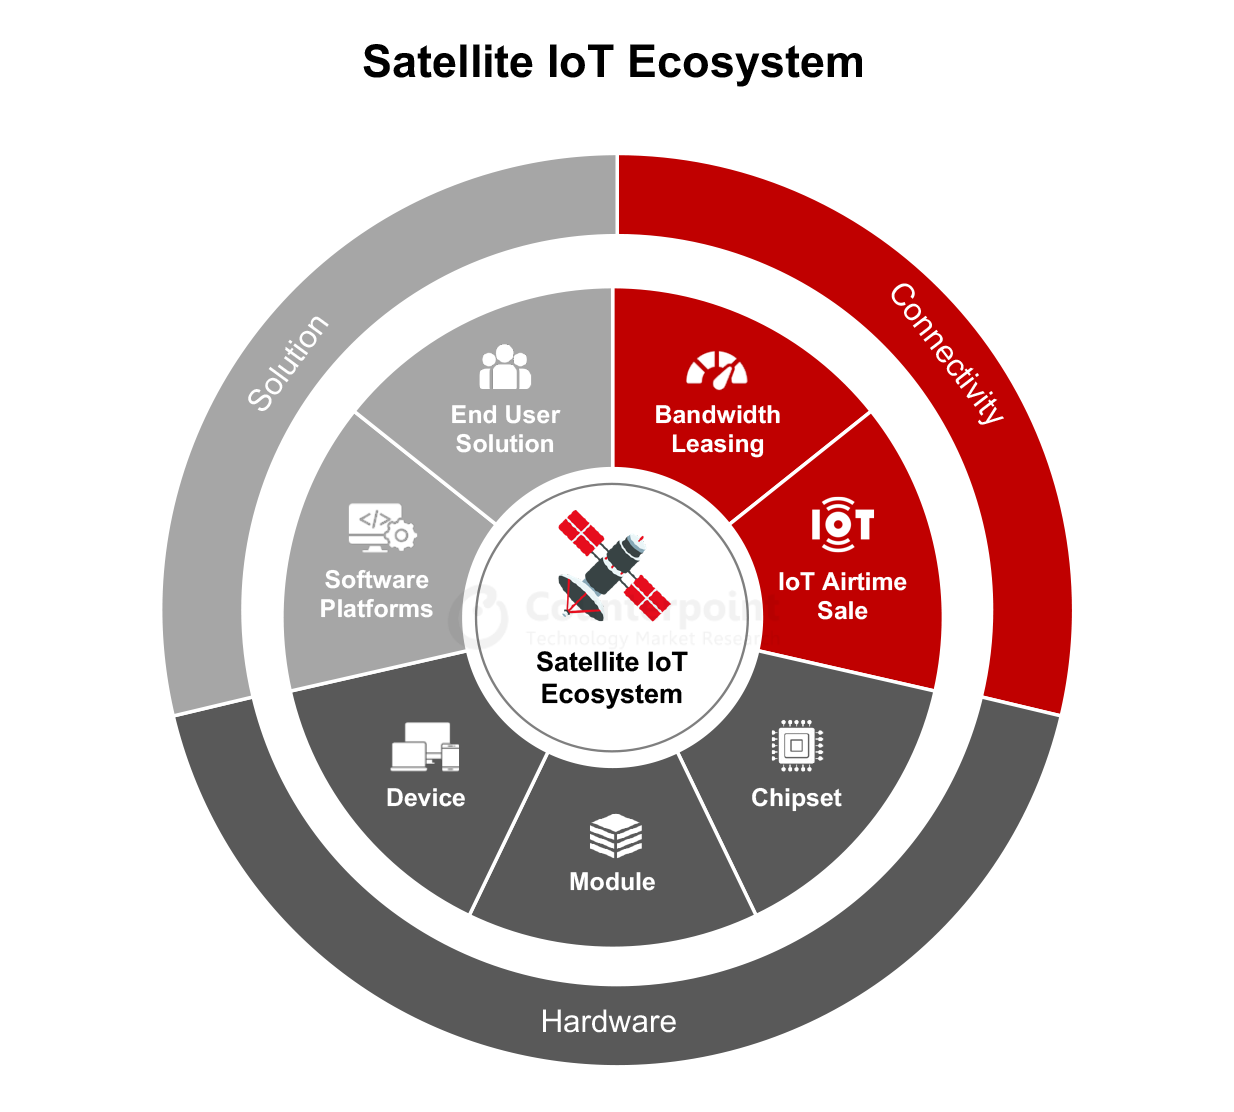 Satellite IoT ecosystem